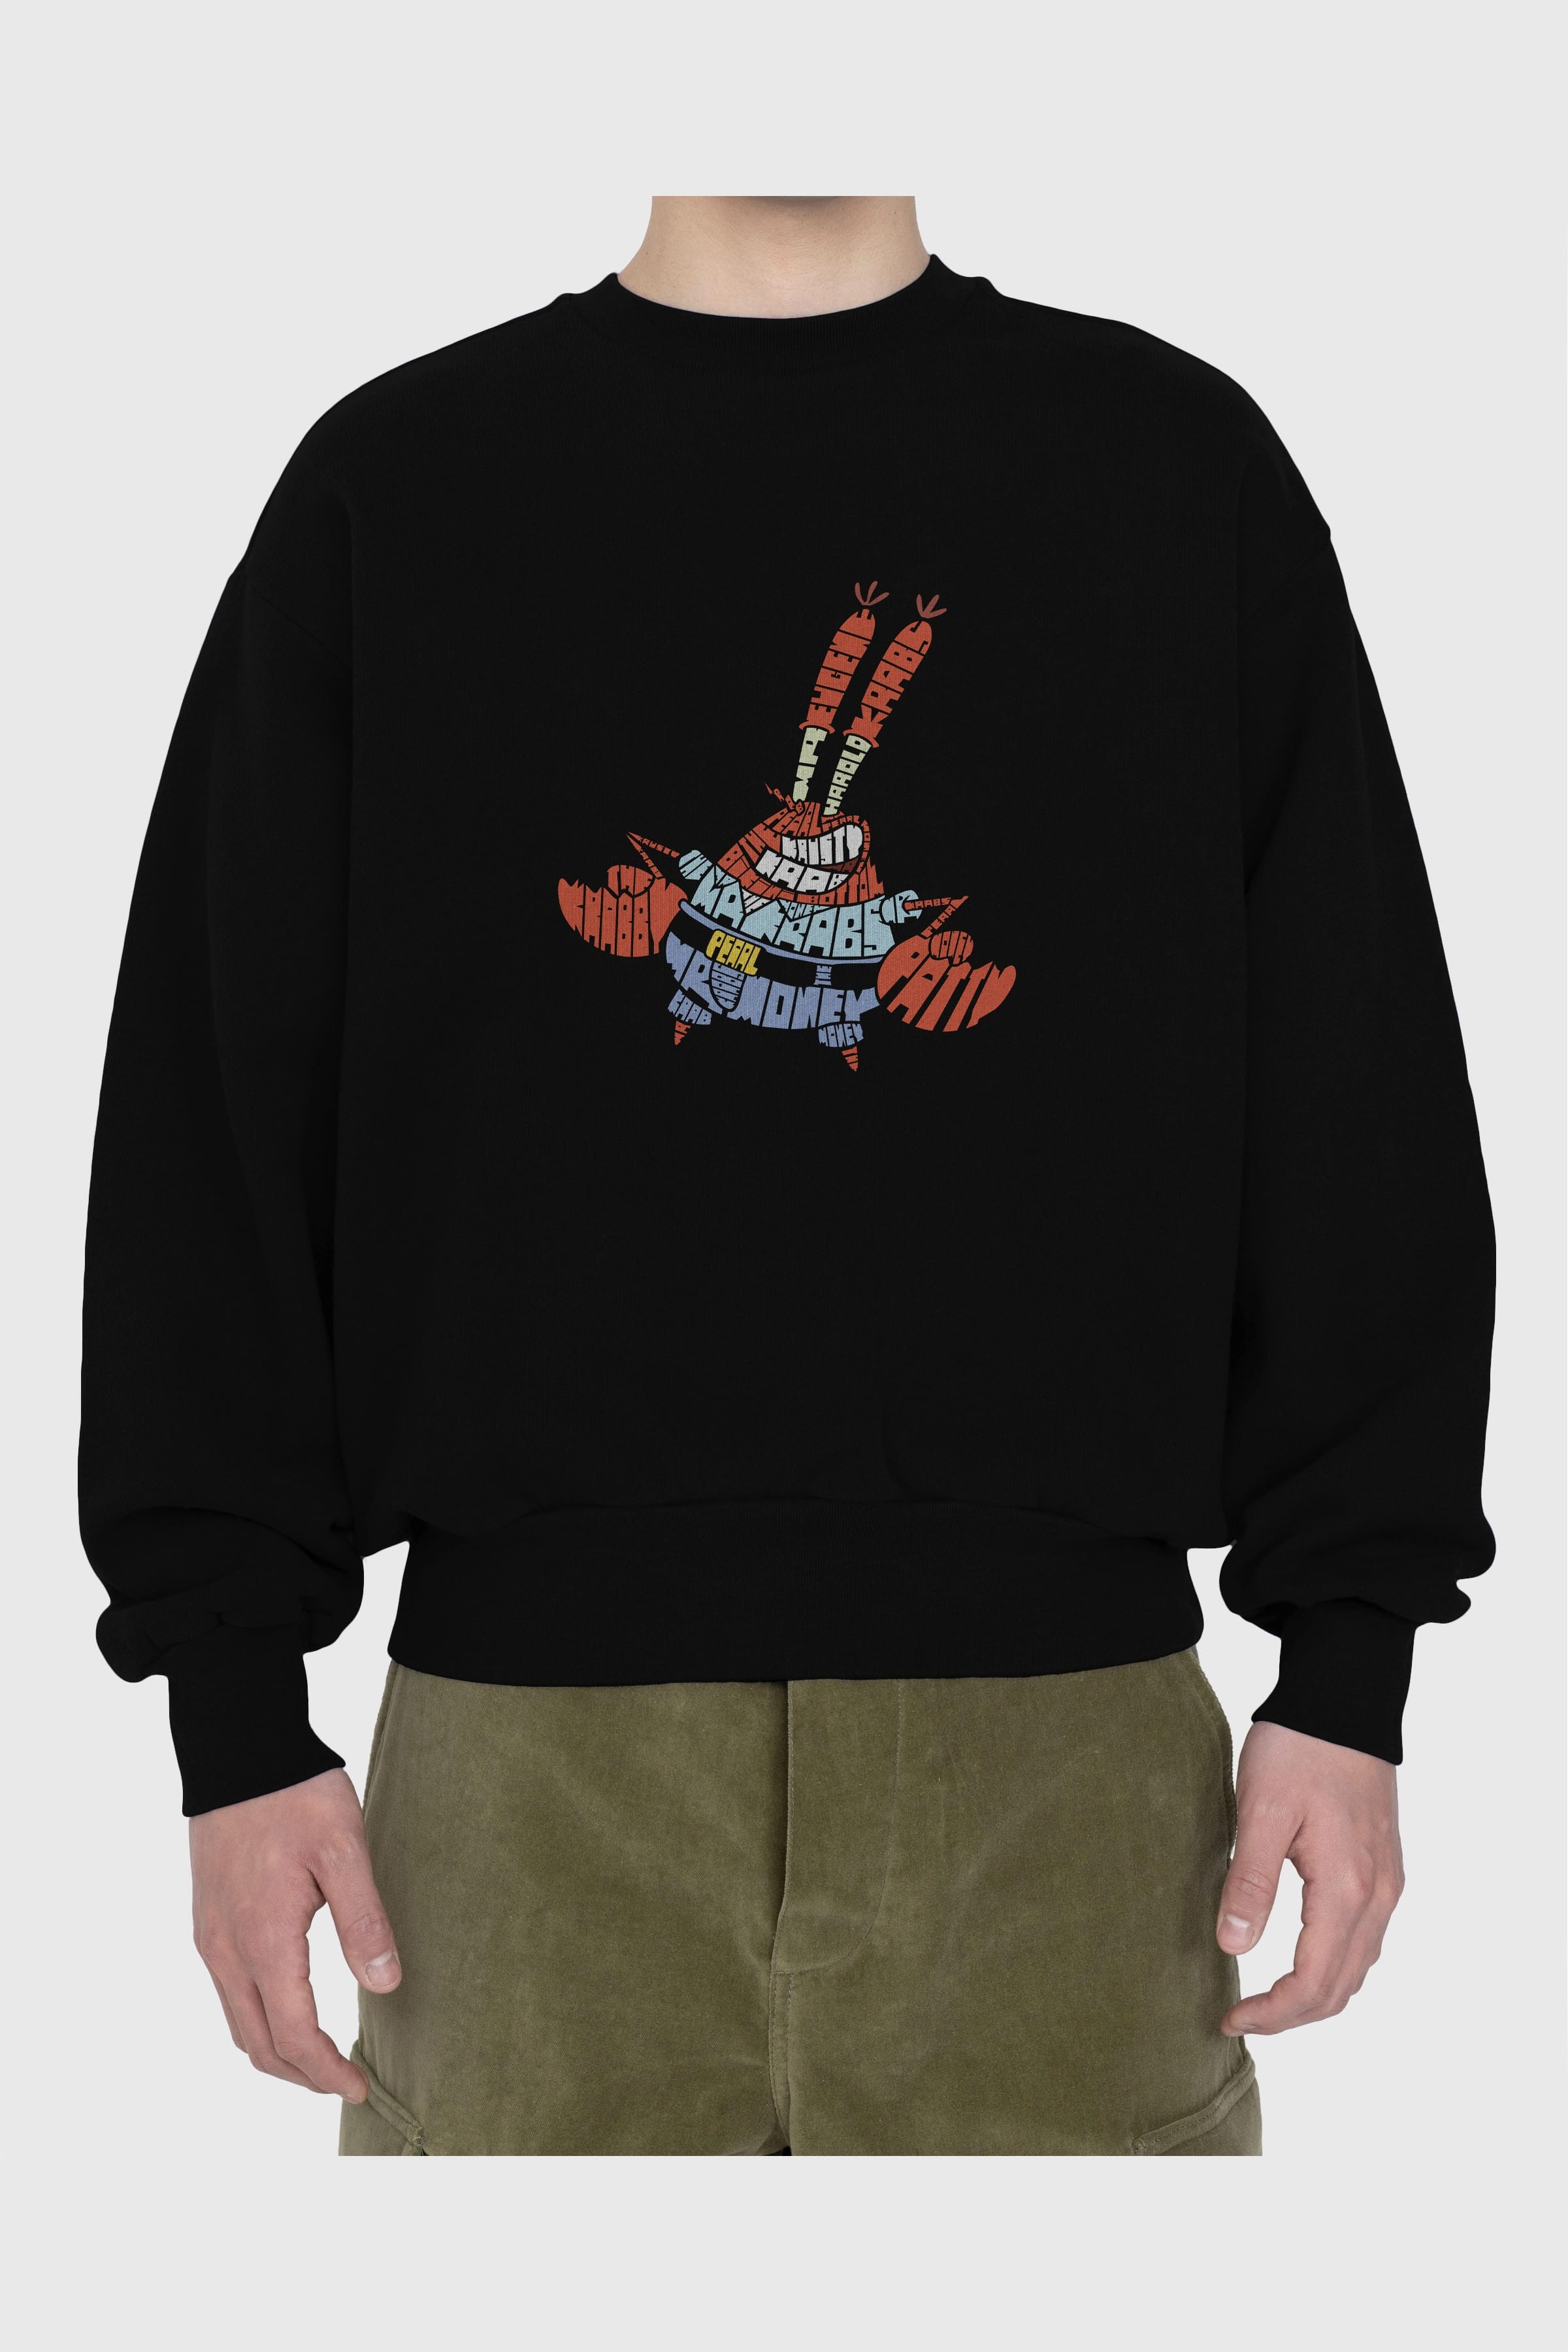 Mr Krabs Ön Baskılı Oversize Sweatshirt Erkek Kadın Unisex